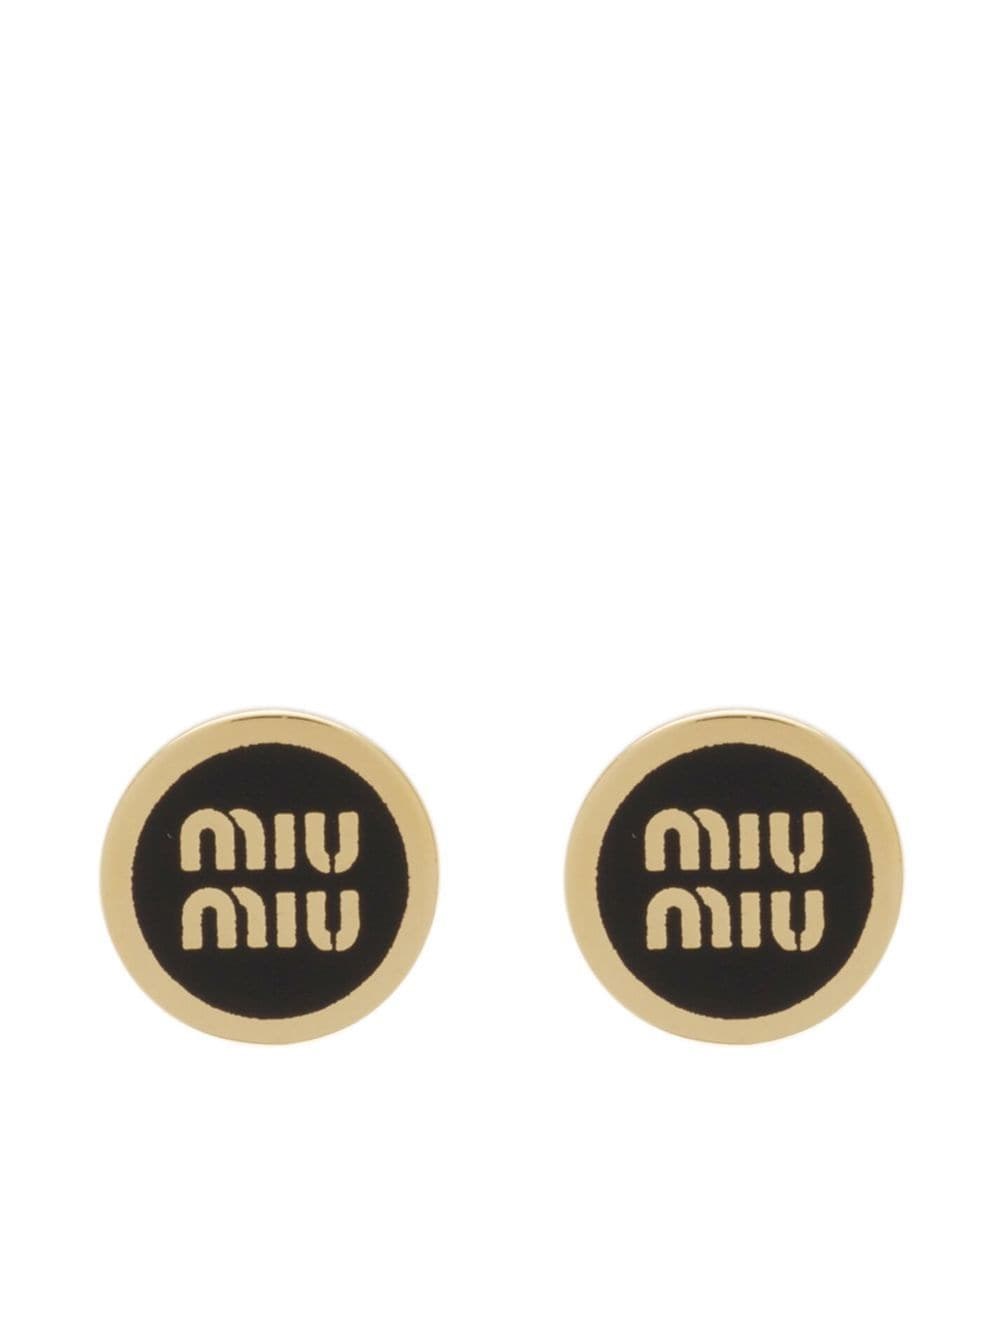 Miu Miu Enameled Metal Earrings In Black